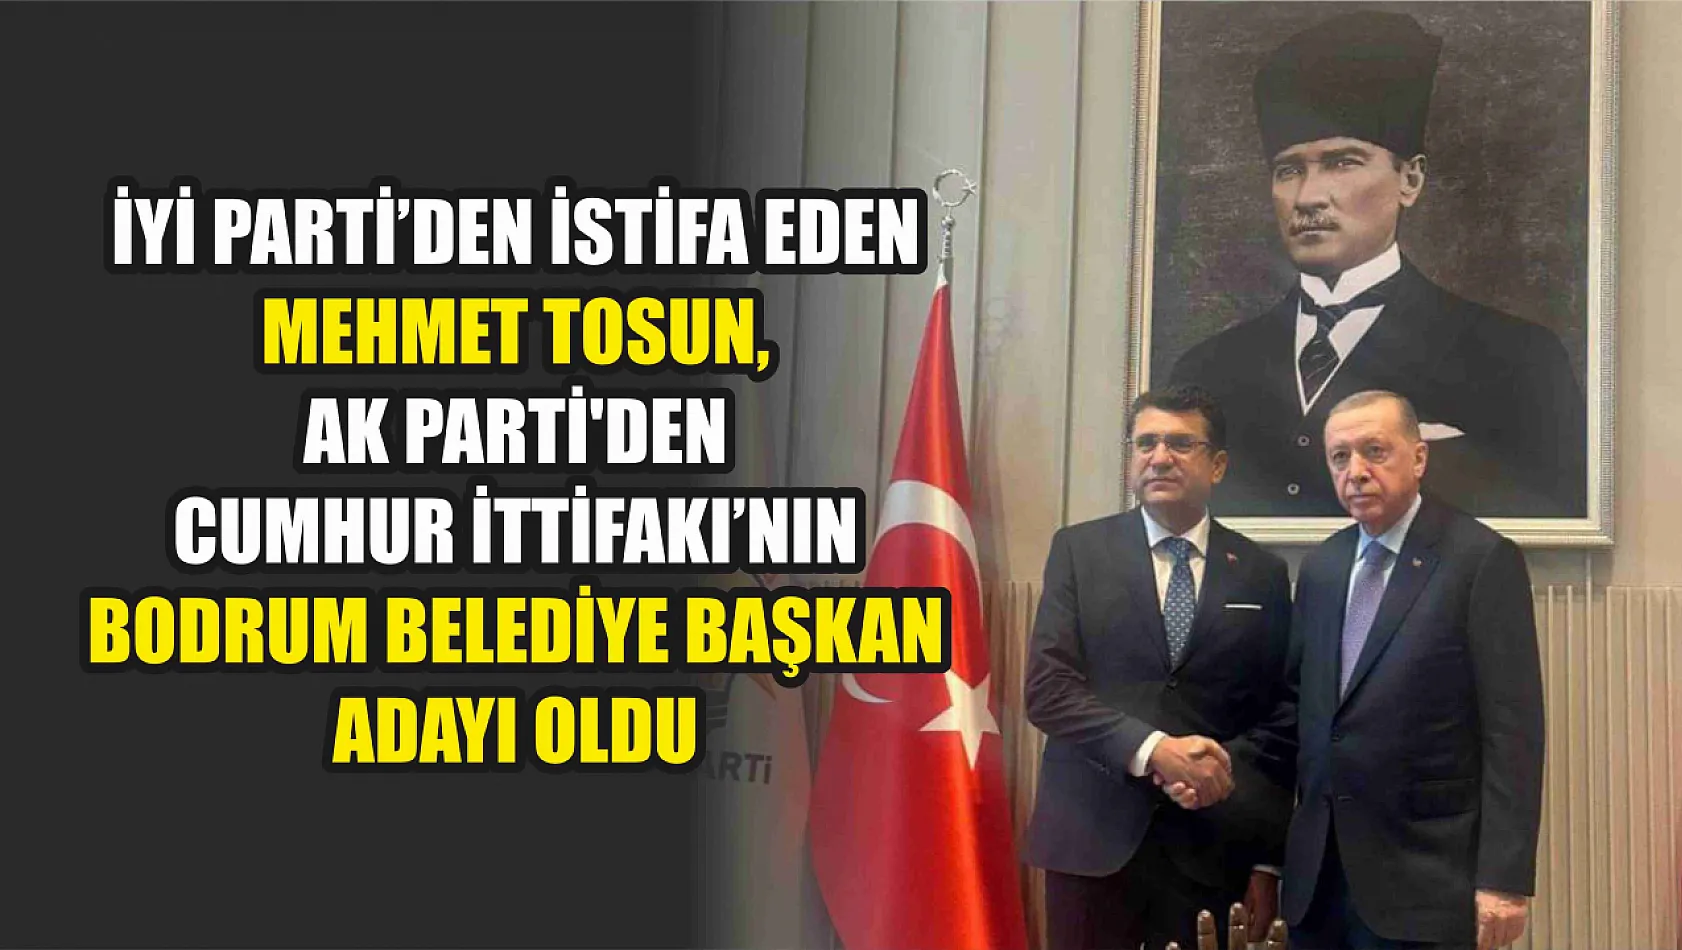 İyi Parti'den istifa eden Mehmet Tosun, AK Parti'den Cumhur İttifakı'nın Bodrum Belediye Başkan Adayı oldu